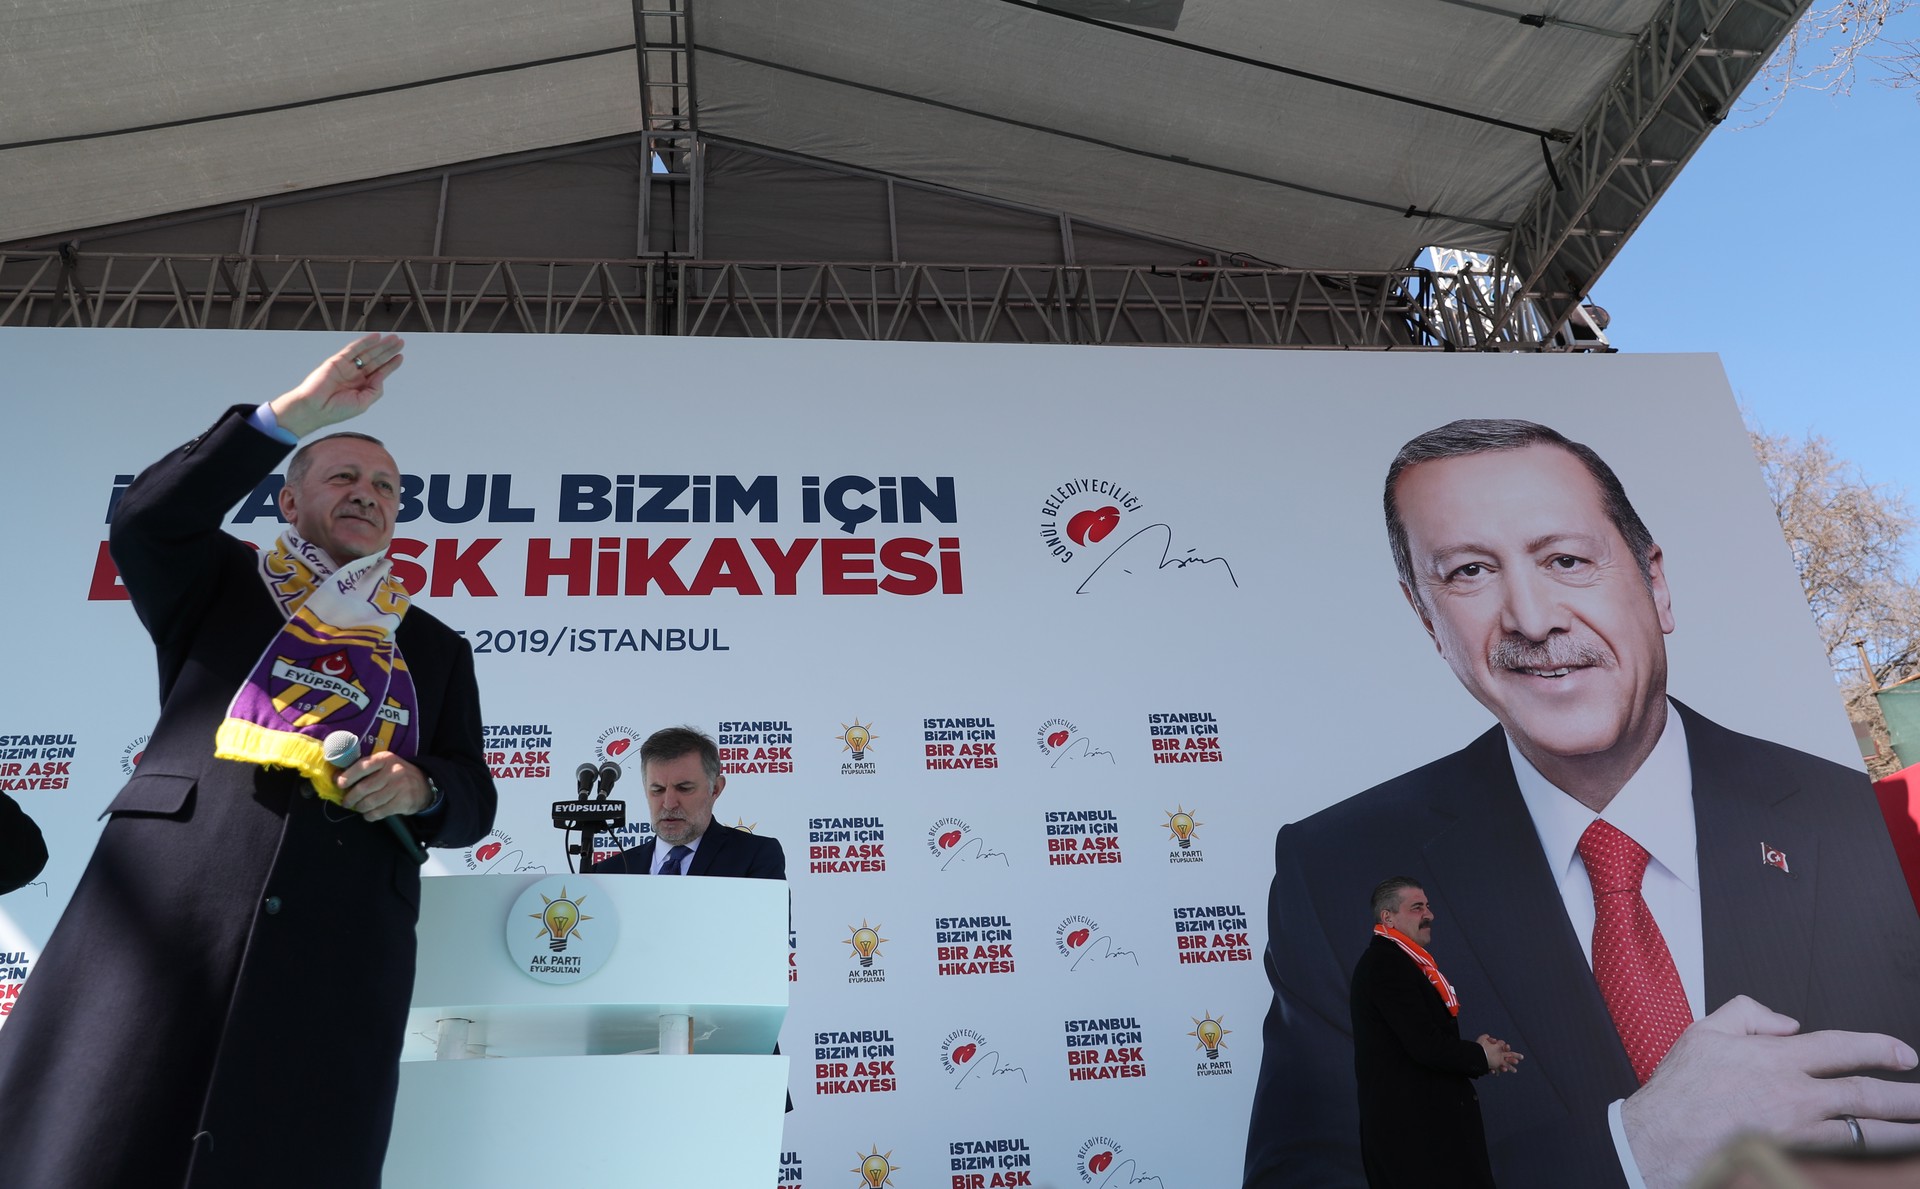 Турецкий политолог оценил шансы Эрдогана проиграть на выборах